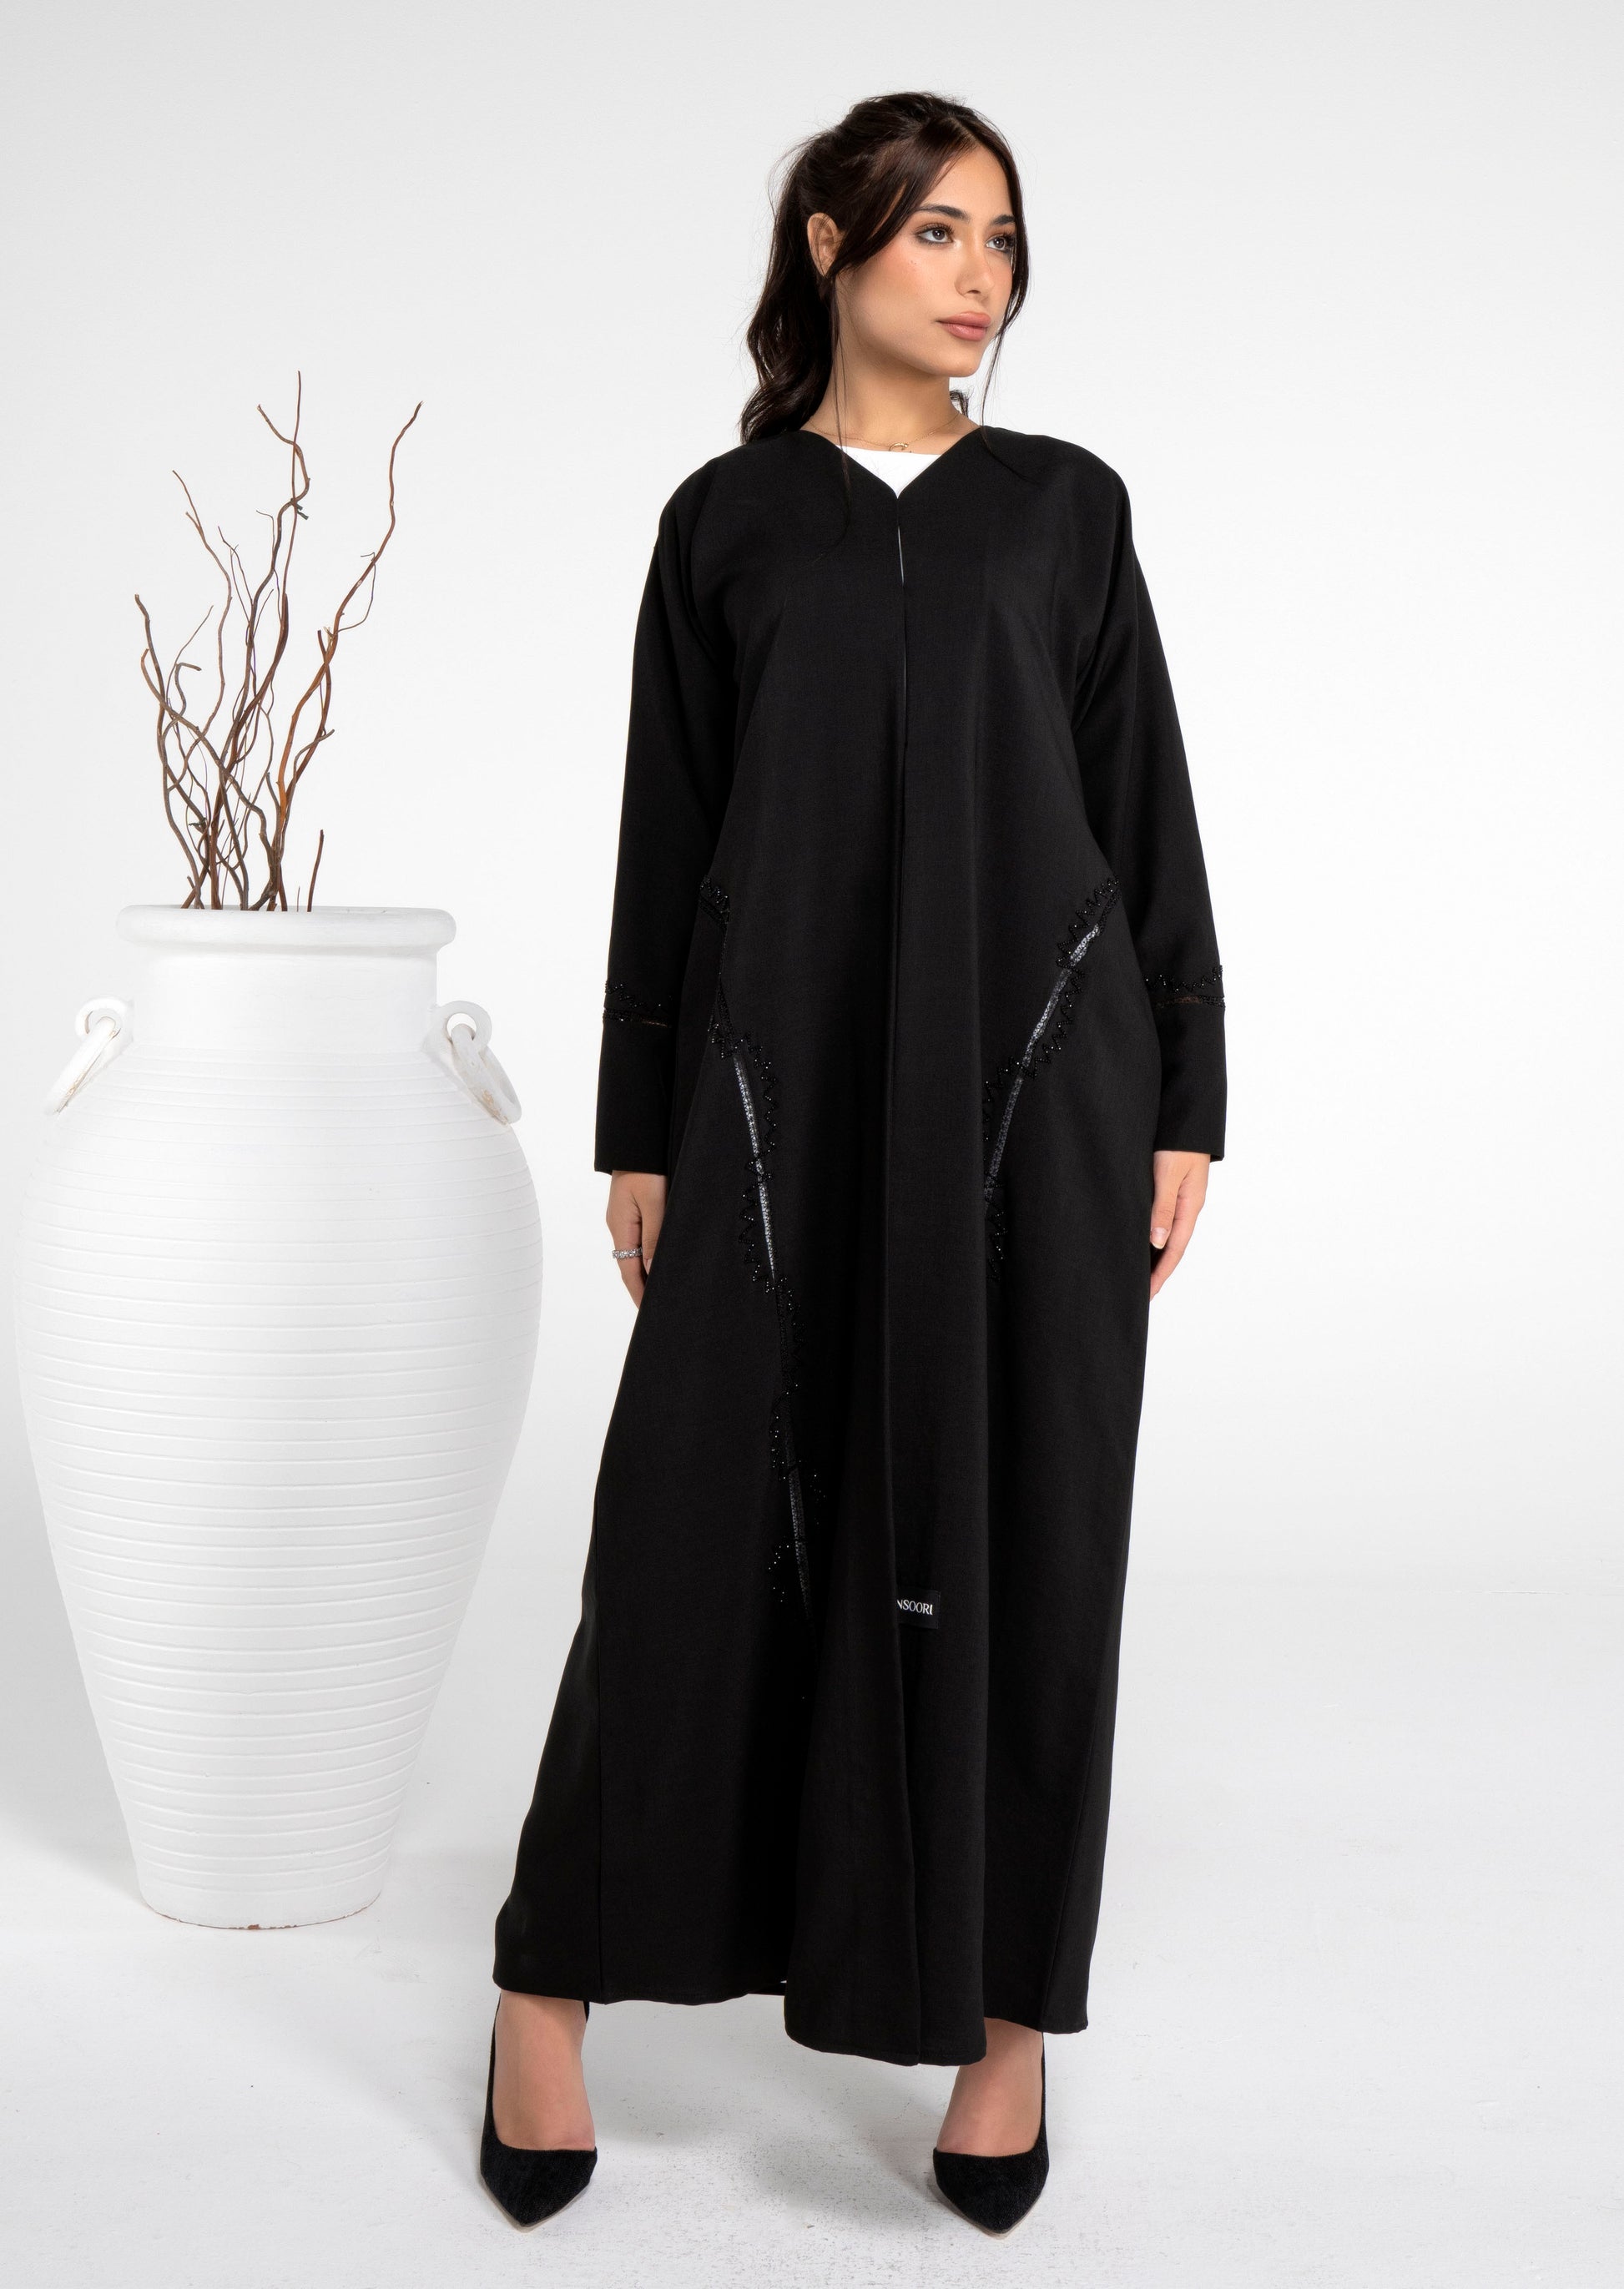 girl wearing black abaya with bead embellishments